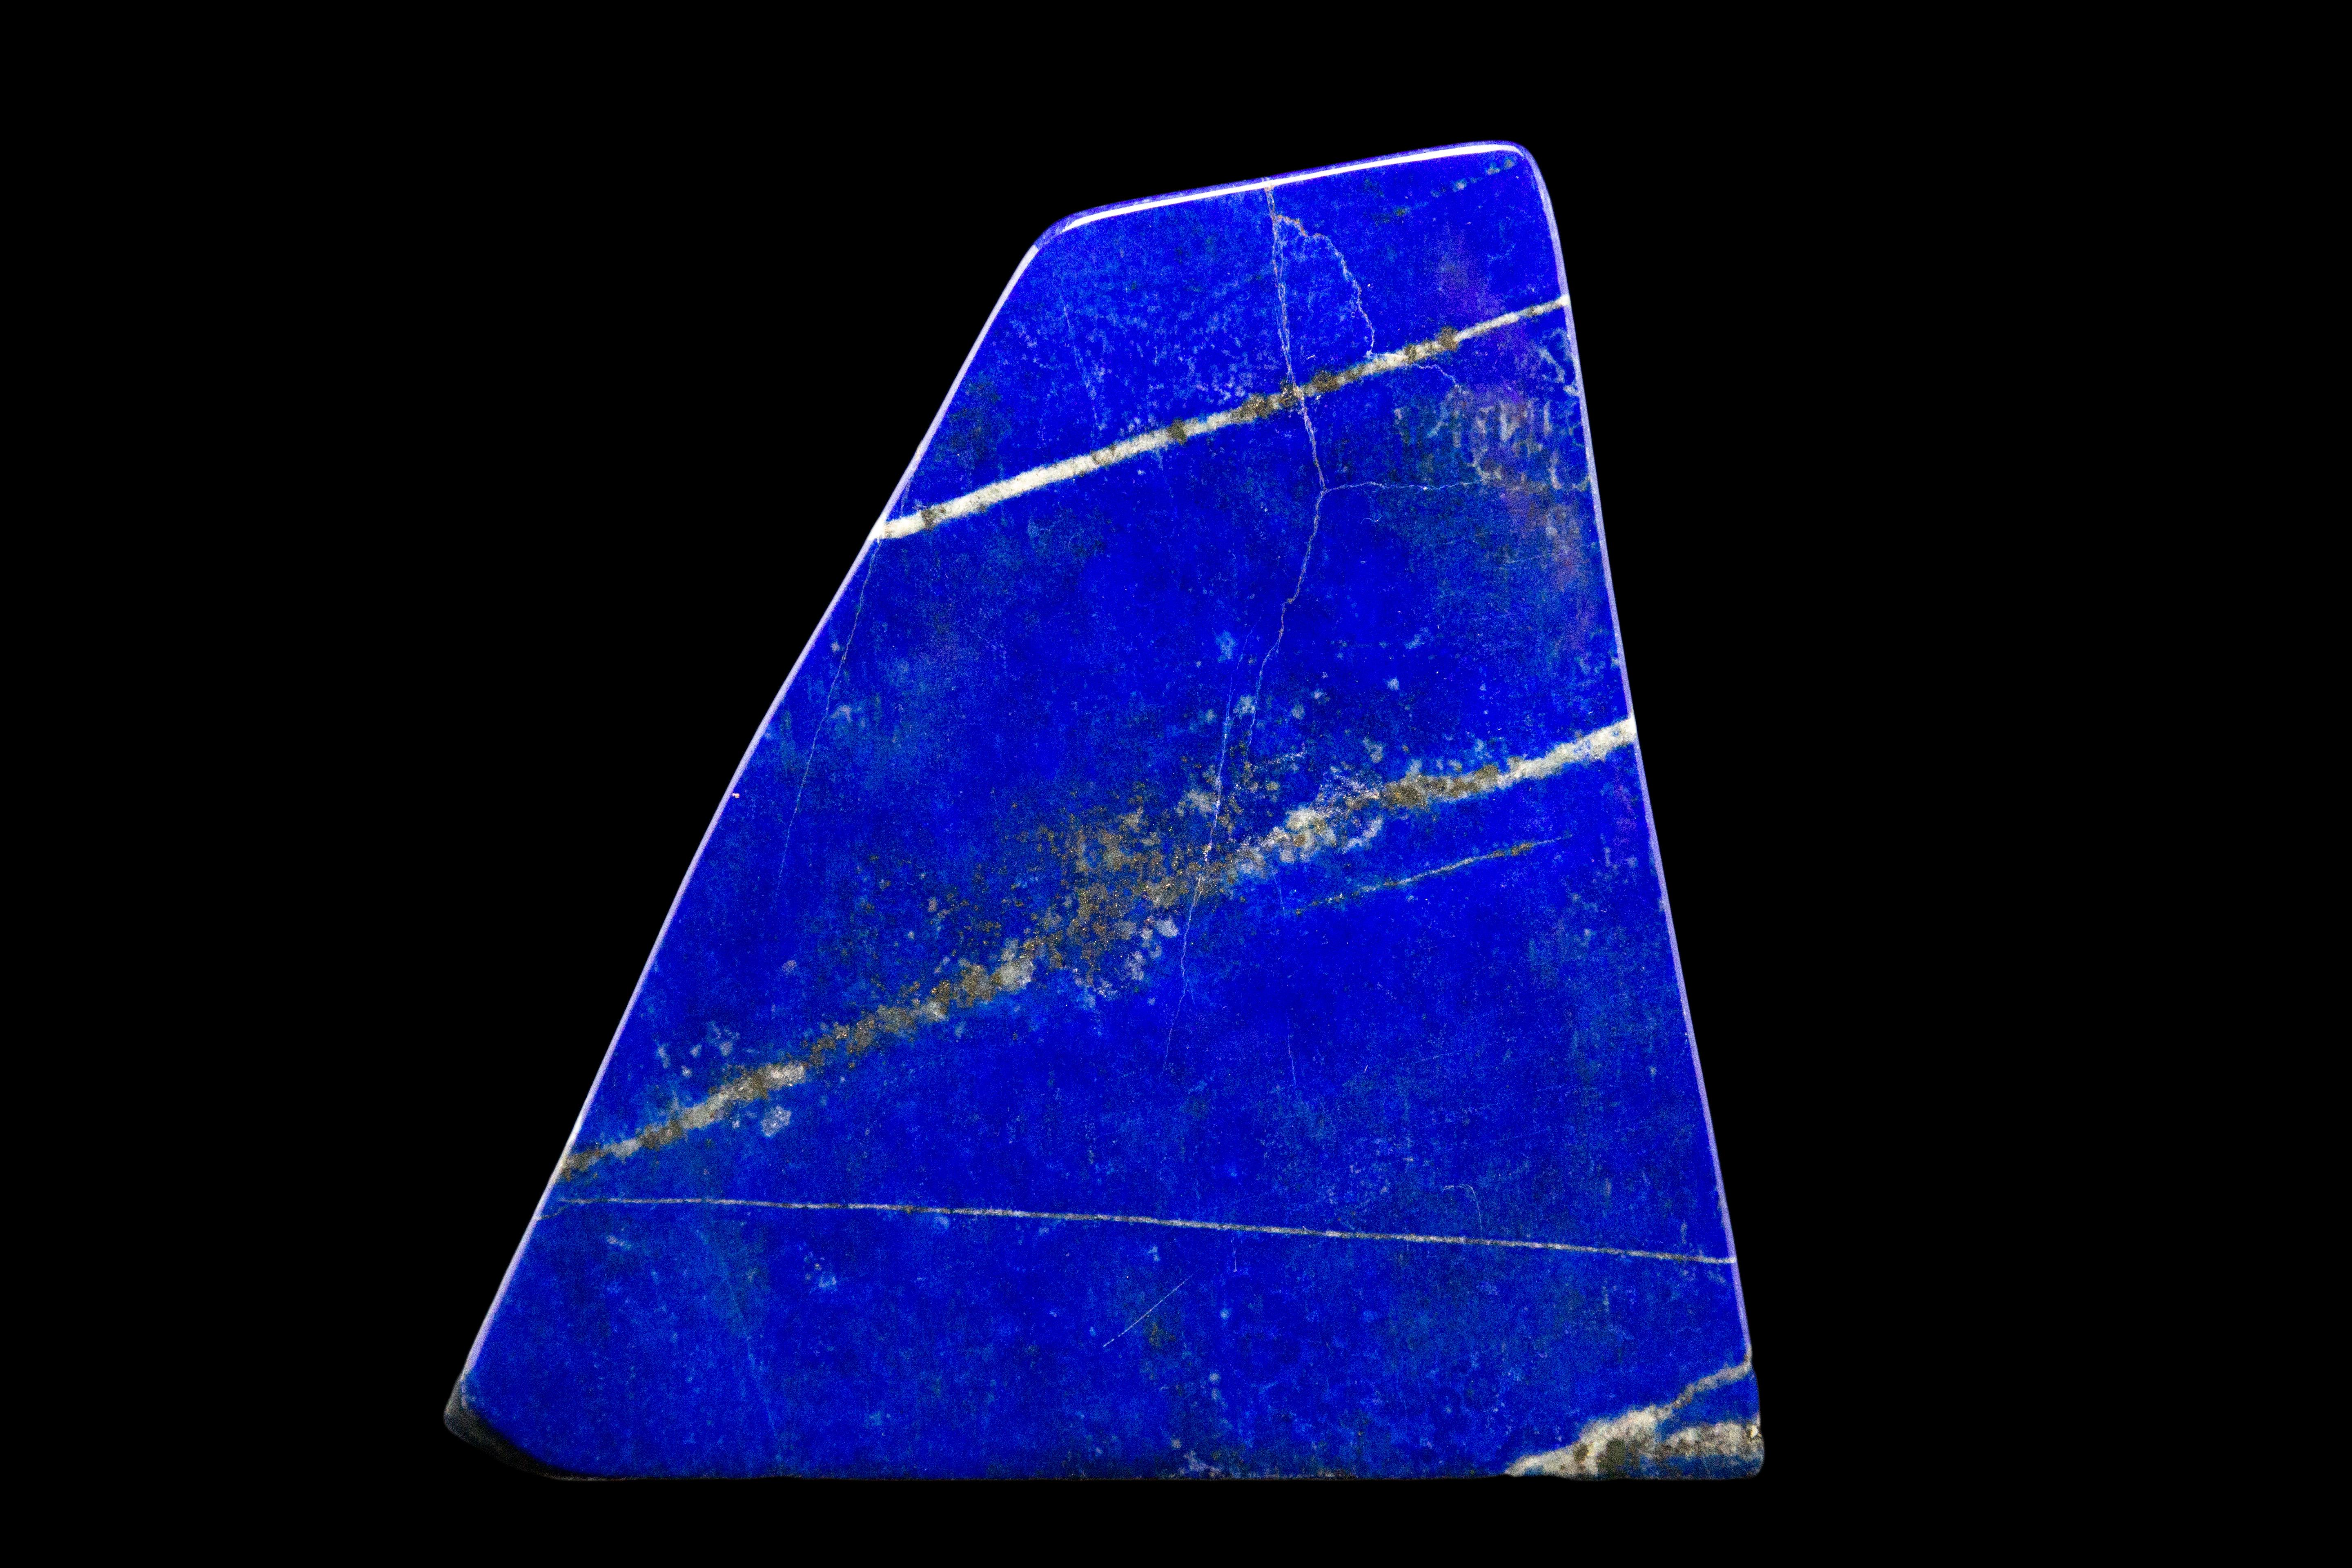 Wunderschön polierte Lapislazuli-Mineralstufe aus Afghanistan. Dieser Halbedelstein wird seit der Antike wegen seiner intensiven, schönen blauen Färbung und den goldenen Sprenkeln geschätzt. Es wurde auch in der bildenden Kunst in Form von